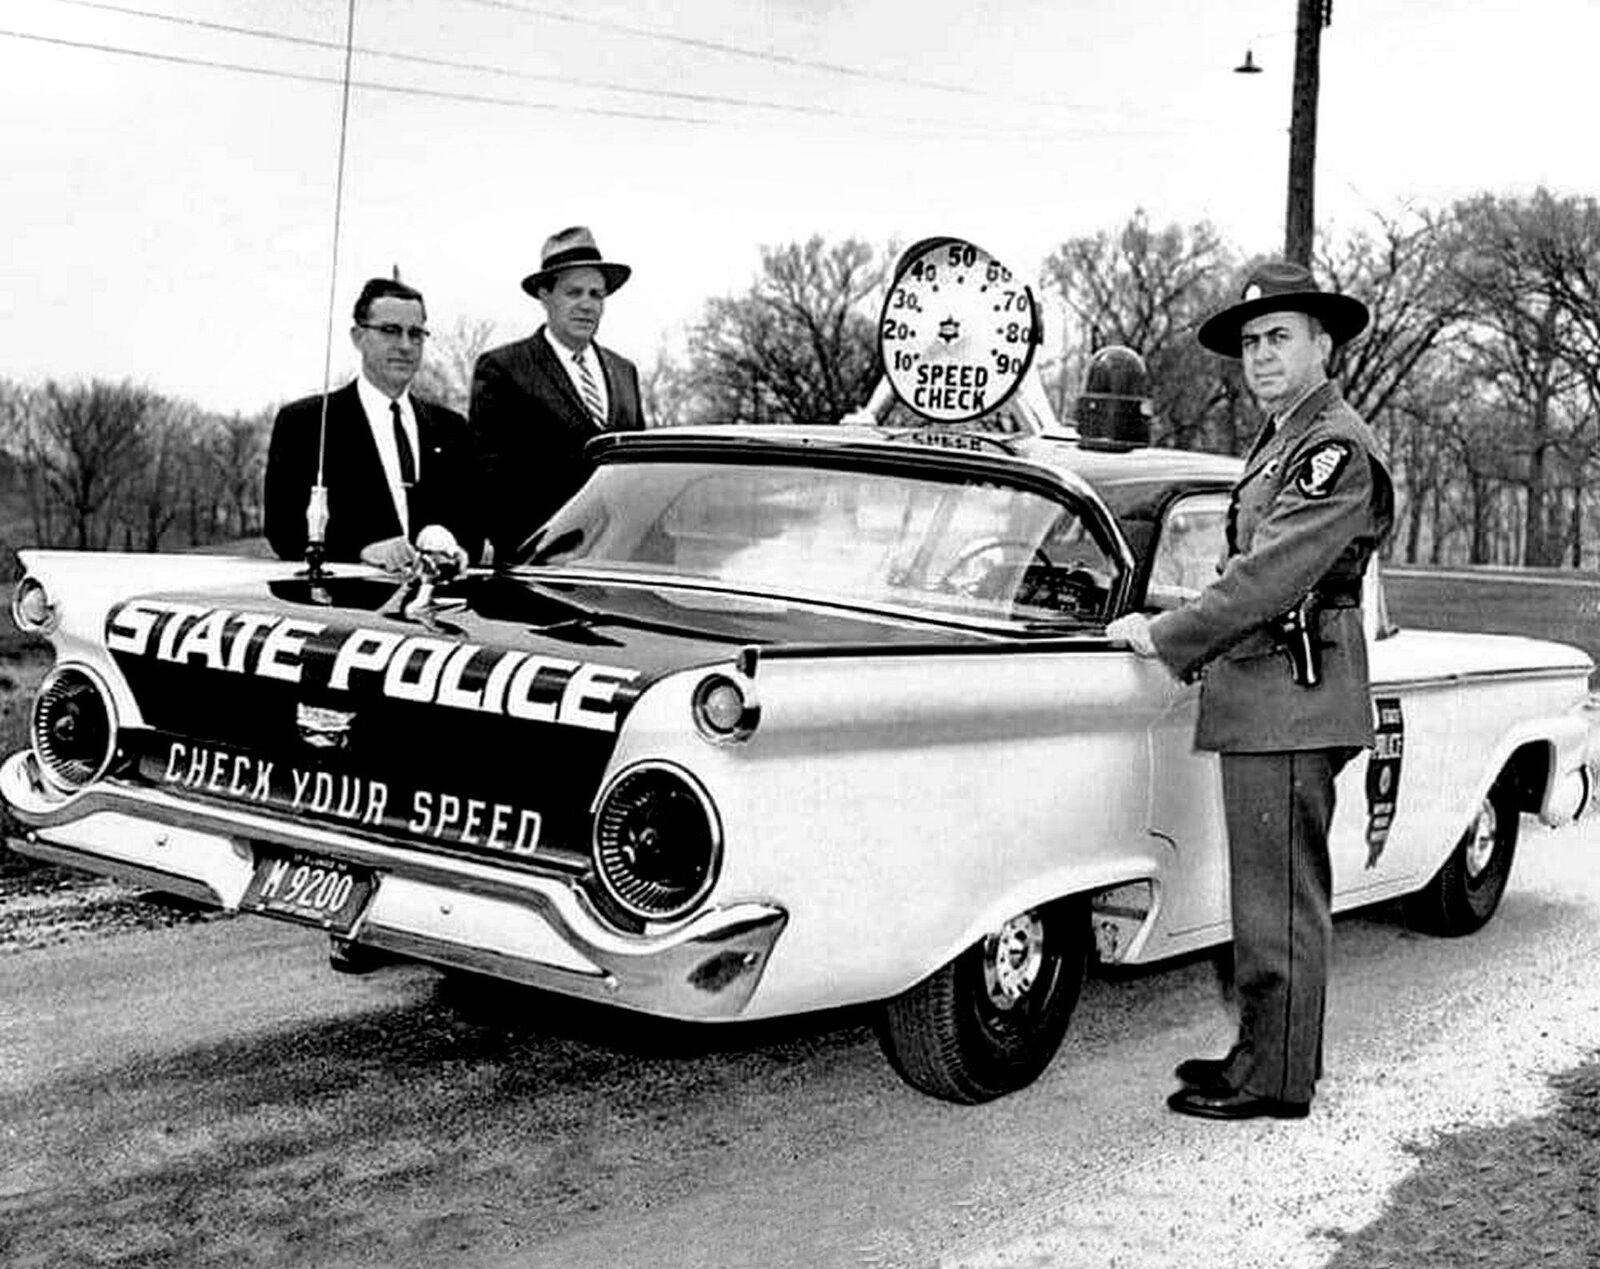 1959 FORD HIGHWAY PATROL POLICE CAR PHOTO  (197-U)